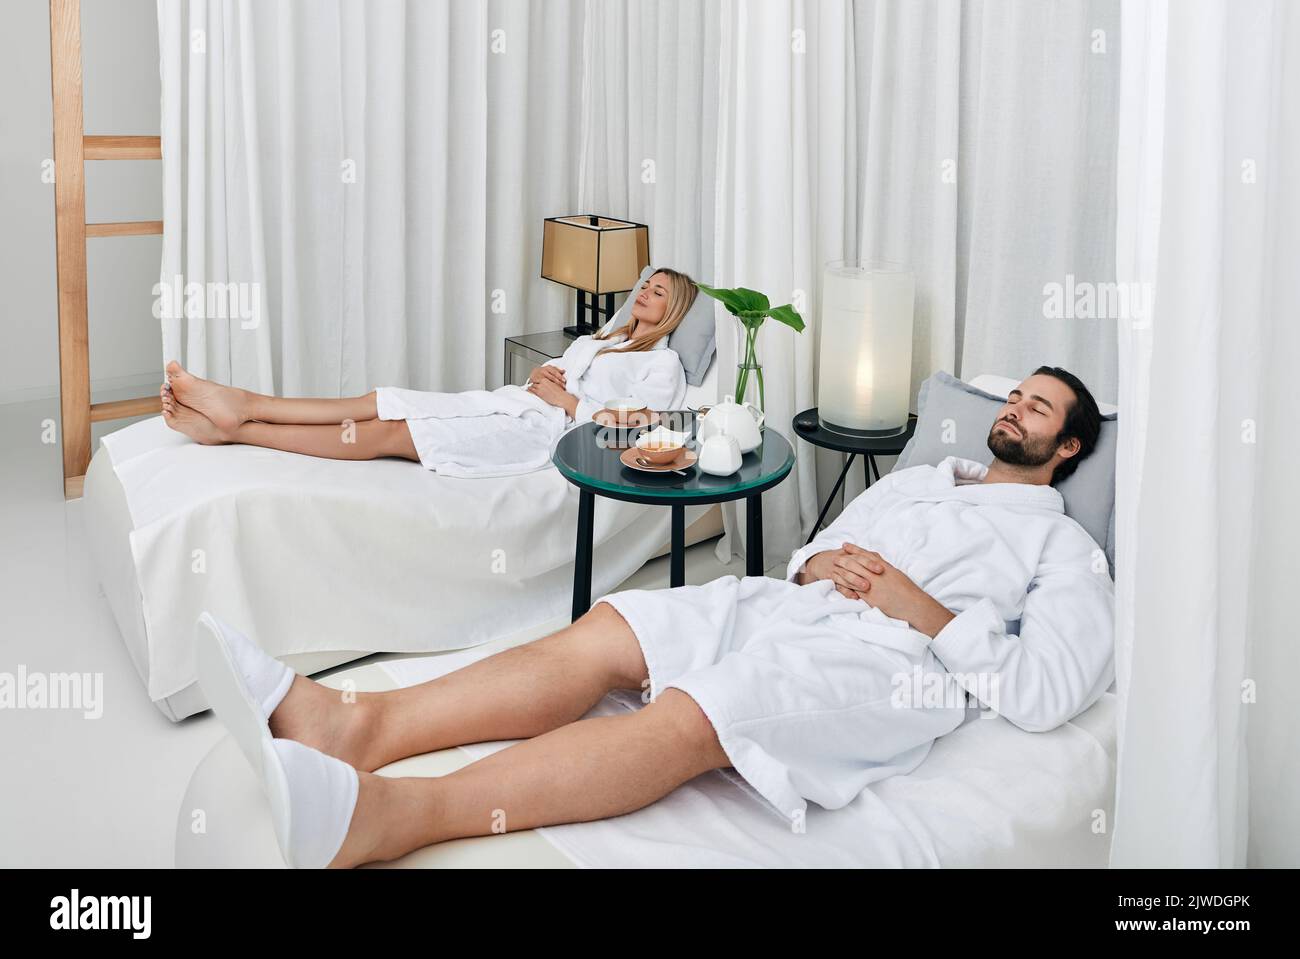 Rilassante bella coppia con gli occhi chiusi adagiarsi su letti bianchi, riposarsi nella zona lounge del centro benessere dopo le procedure spa Foto Stock